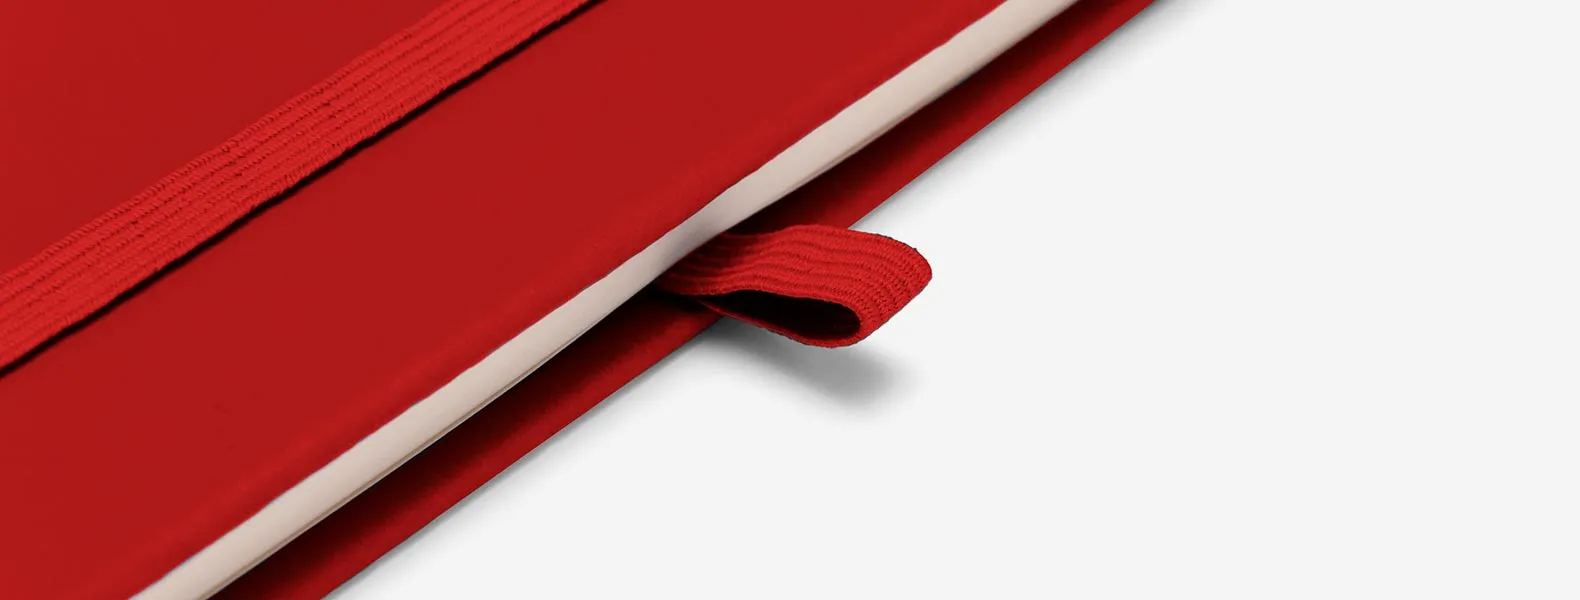 Caderno para anotações vermelho com capa dura. Conta com 80 folhas pautadas, porta caneta e elástico para fechamento. Gramatura da folha de 70 g/m2 com 15x9cm.